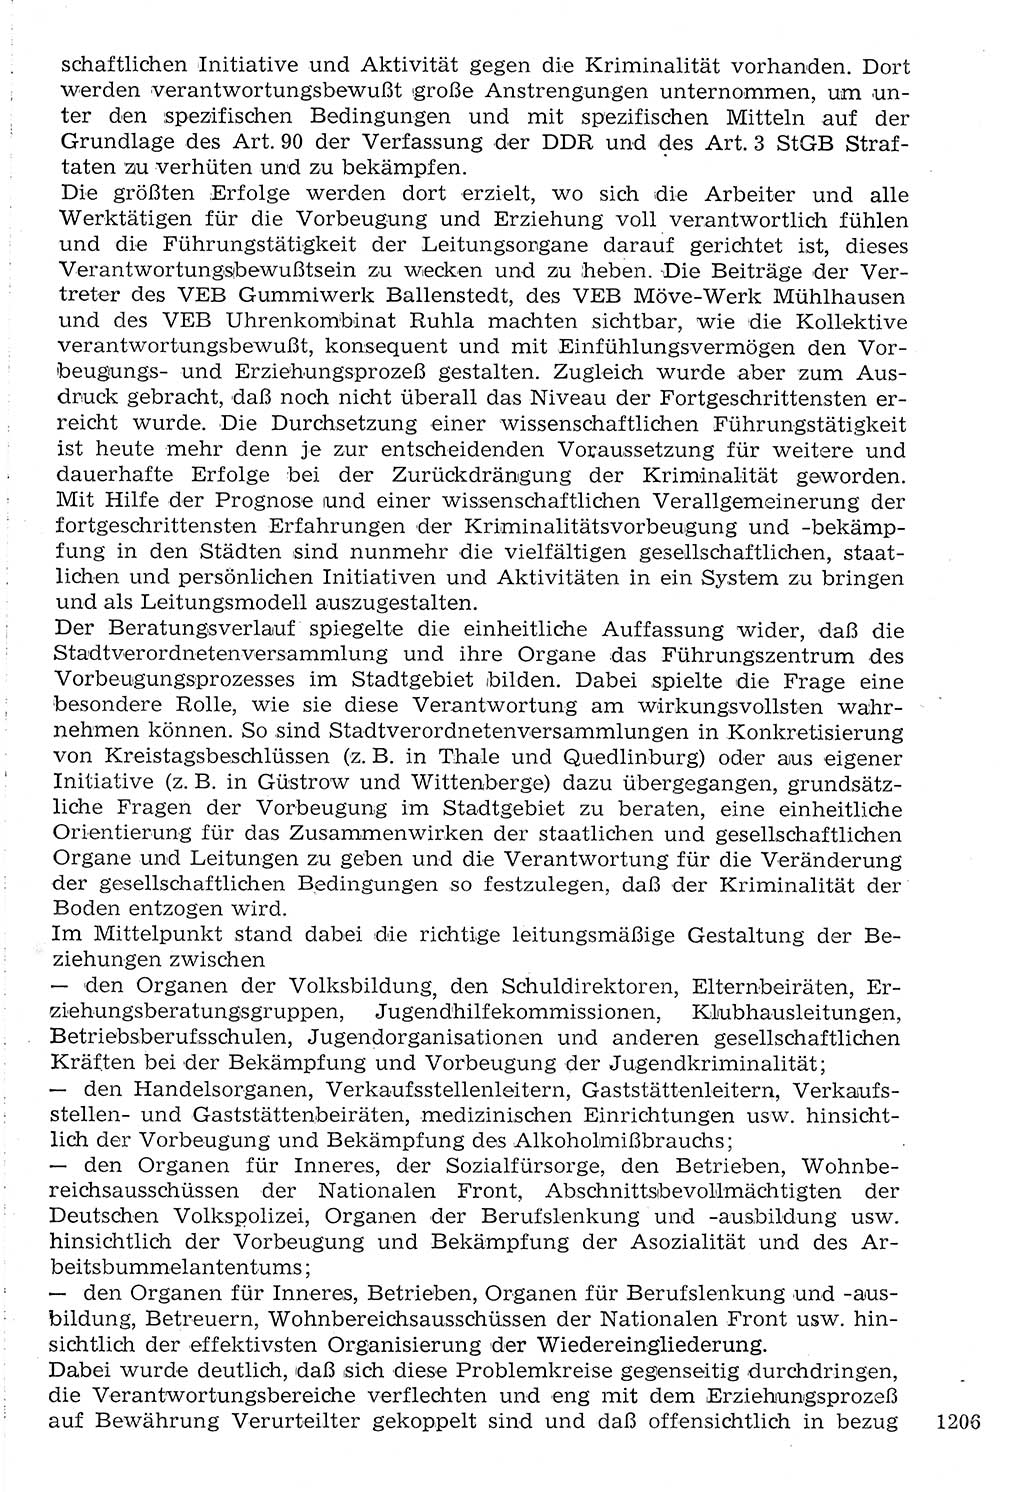 Staat und Recht (StuR), 17. Jahrgang [Deutsche Demokratische Republik (DDR)] 1968, Seite 1206 (StuR DDR 1968, S. 1206)